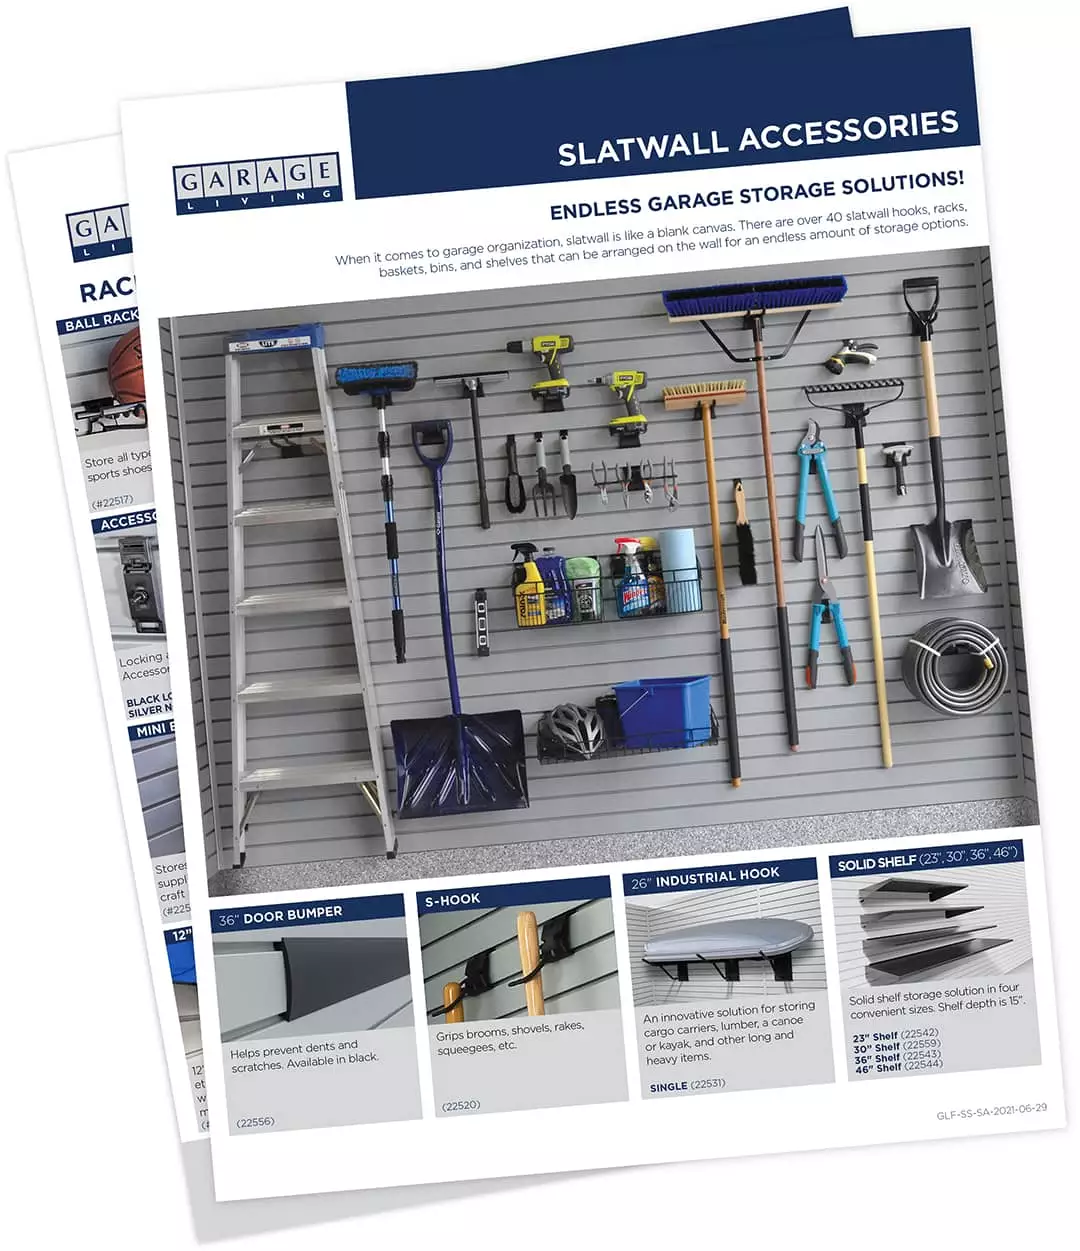 xslatwall_accessories-20210629.jpg.pagespeed.ic.L8IPEr025s